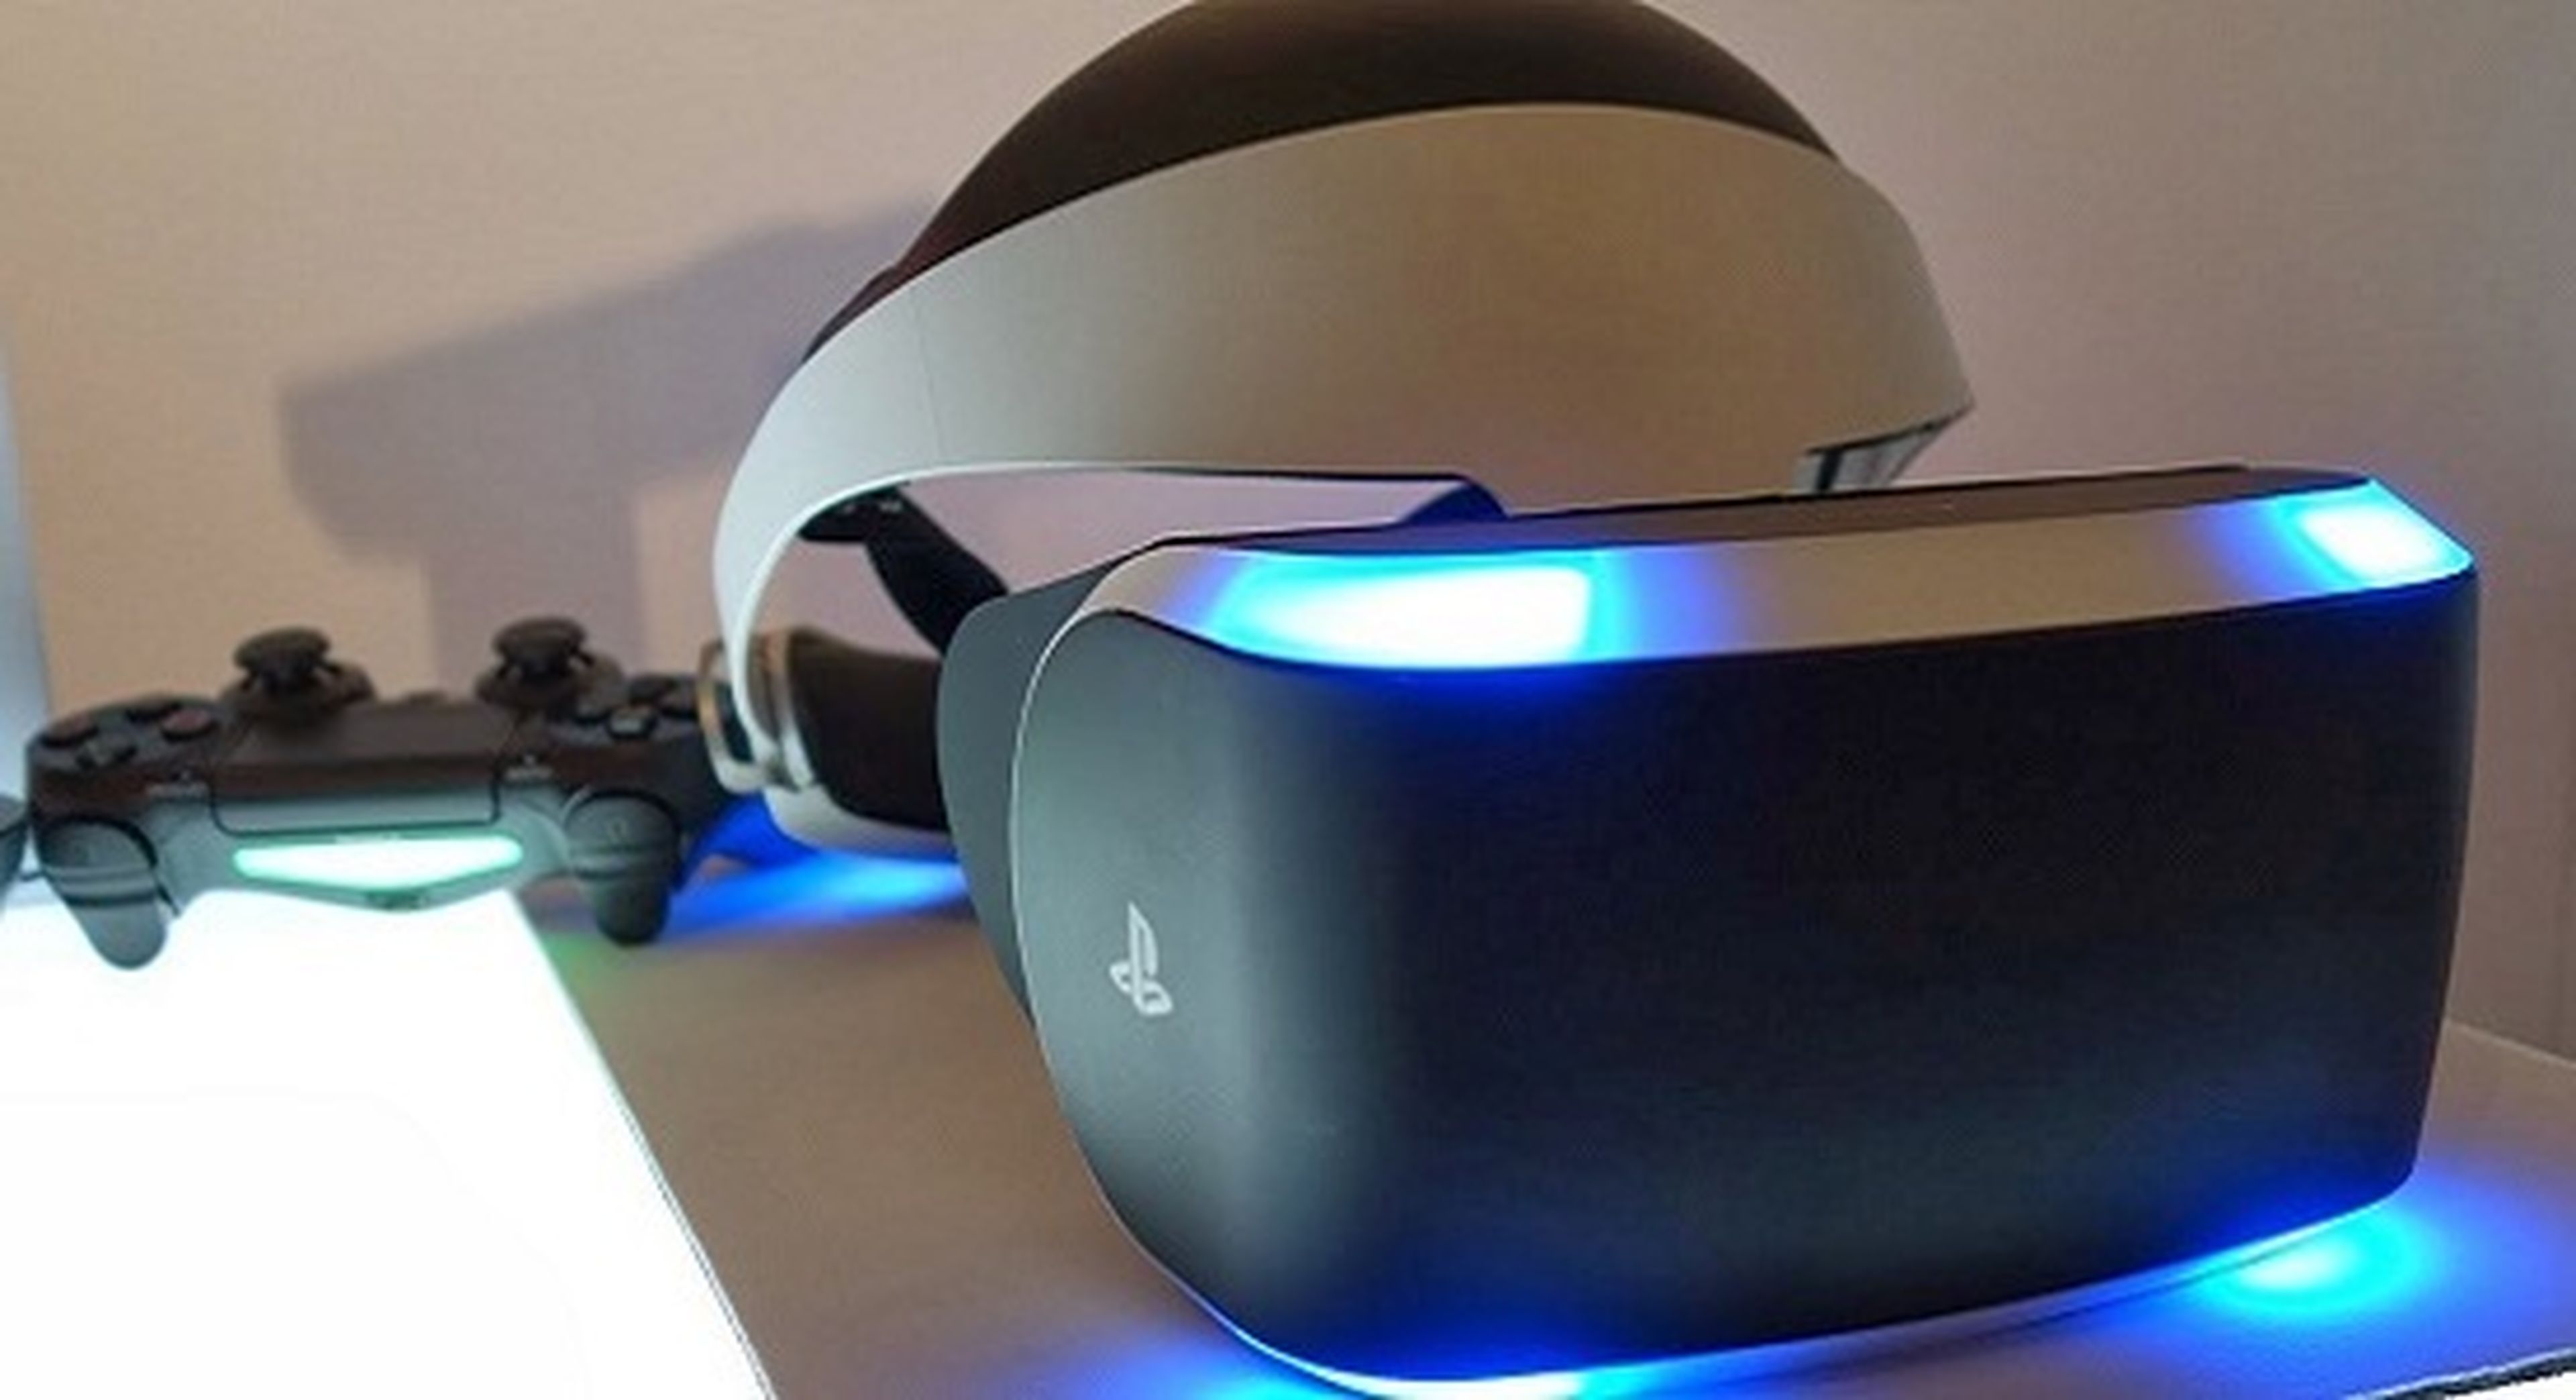 PlayStation VR - Conferencia especial en la GDC 2016